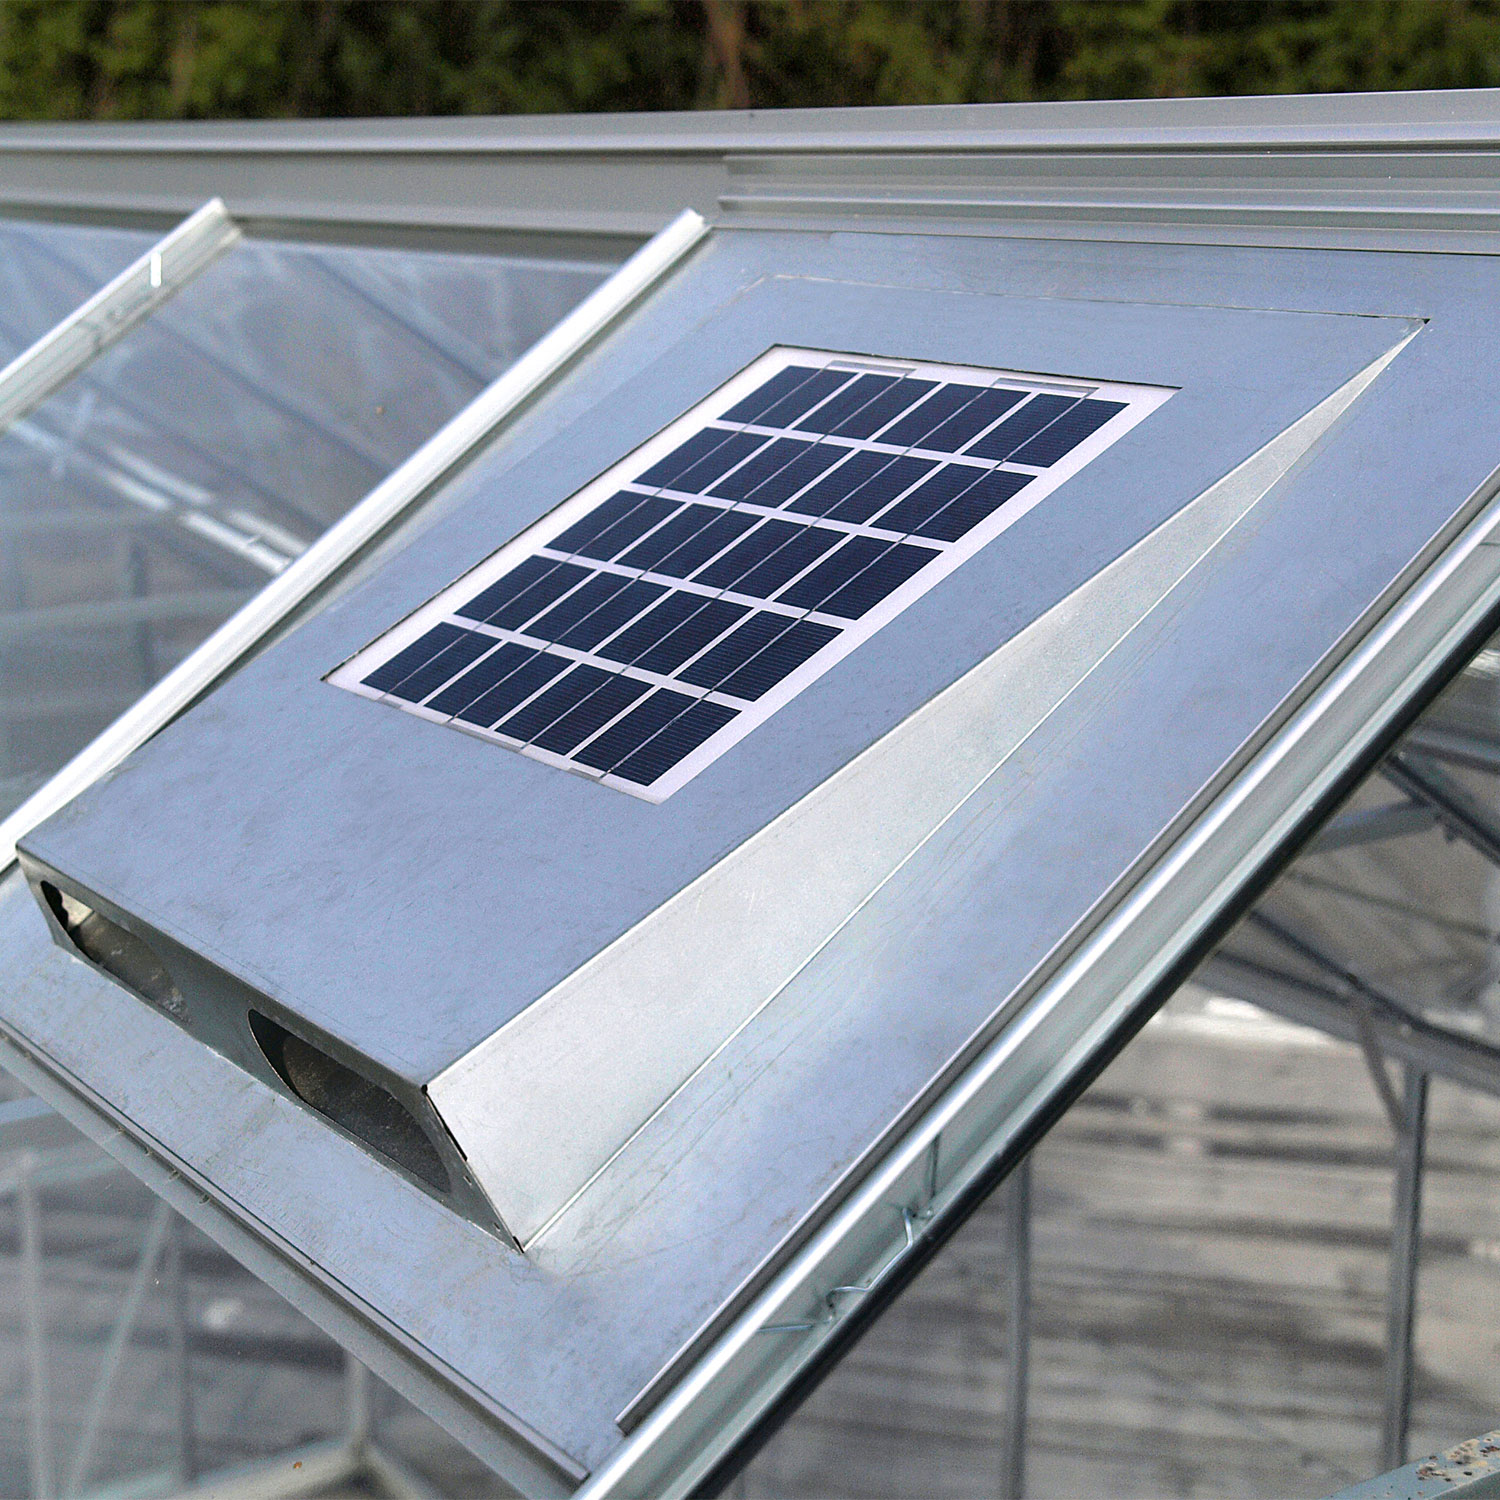 50W Solarlüfter Solar Ventilator Lüfter Solarventilator Gewächshaus Belüftung12V